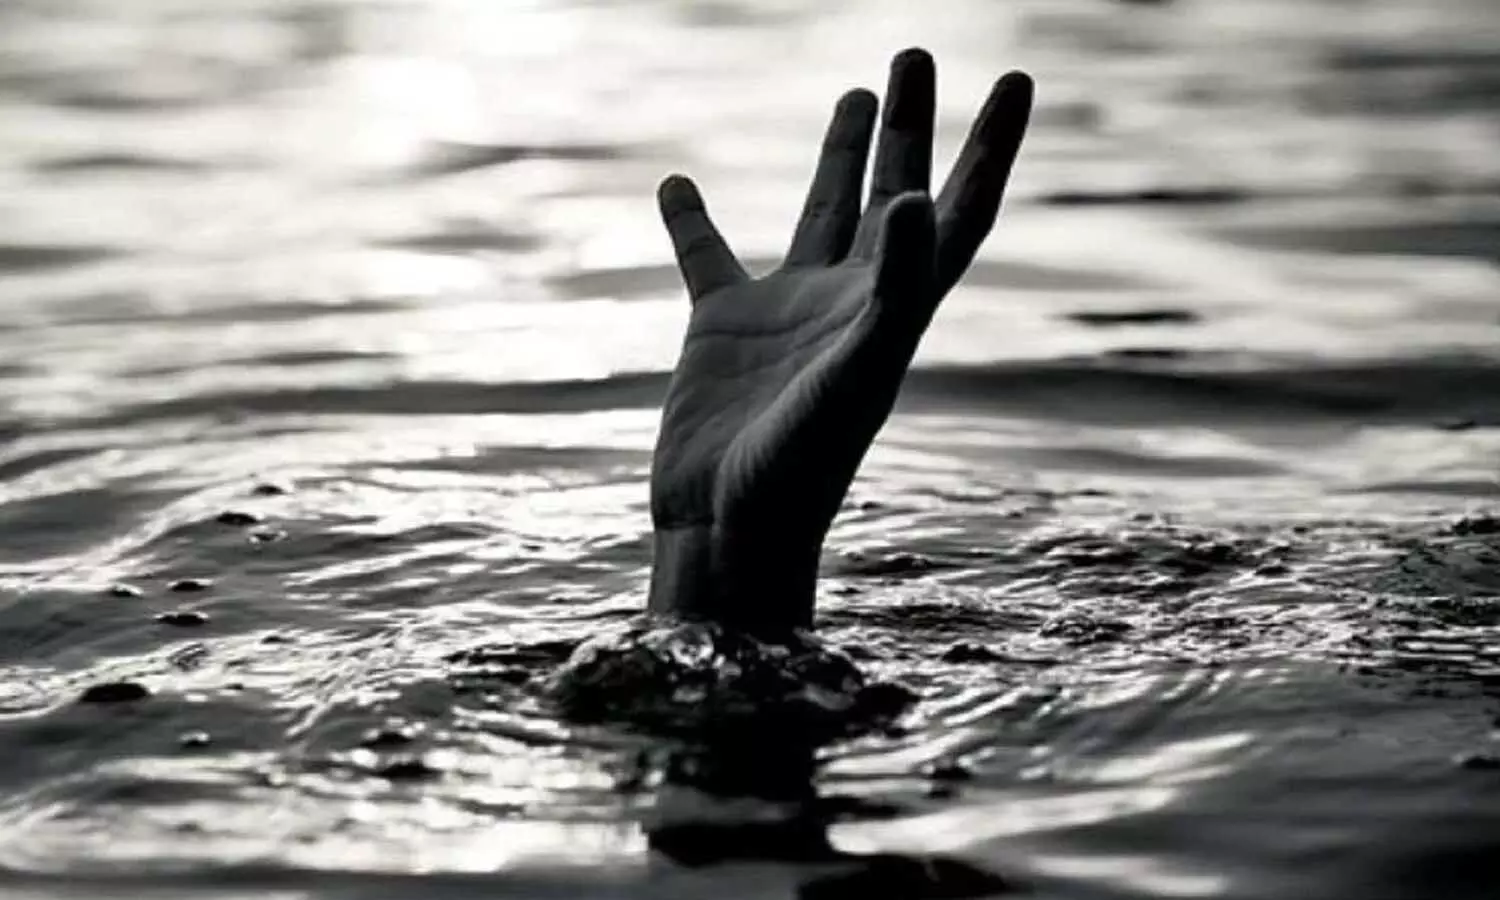 Gujarat News: चार बेटियों संग नहर में कूदी मां, 3 की मौत, 2 सुरक्षित